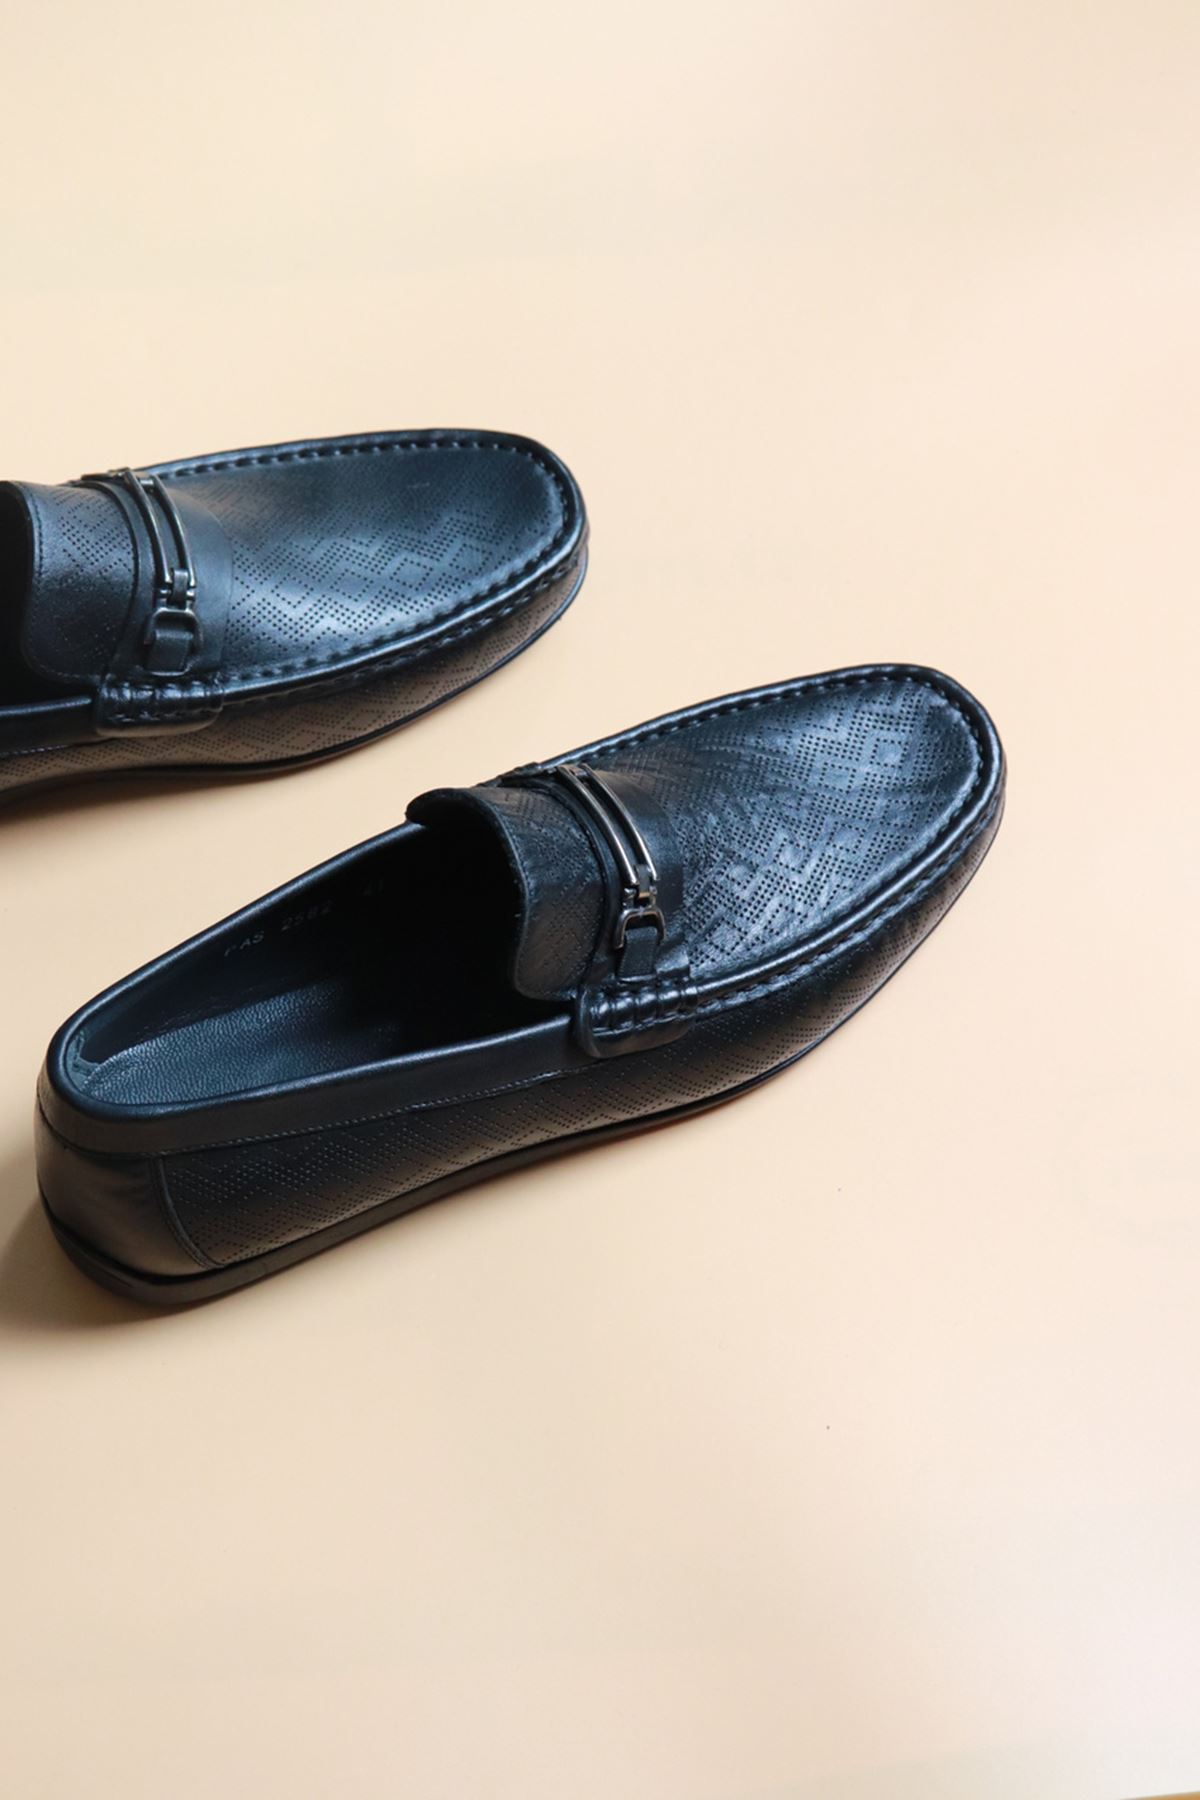 Fosco - 2582 - Siyah Desenli  Erkek Loafer Ayakkabı 